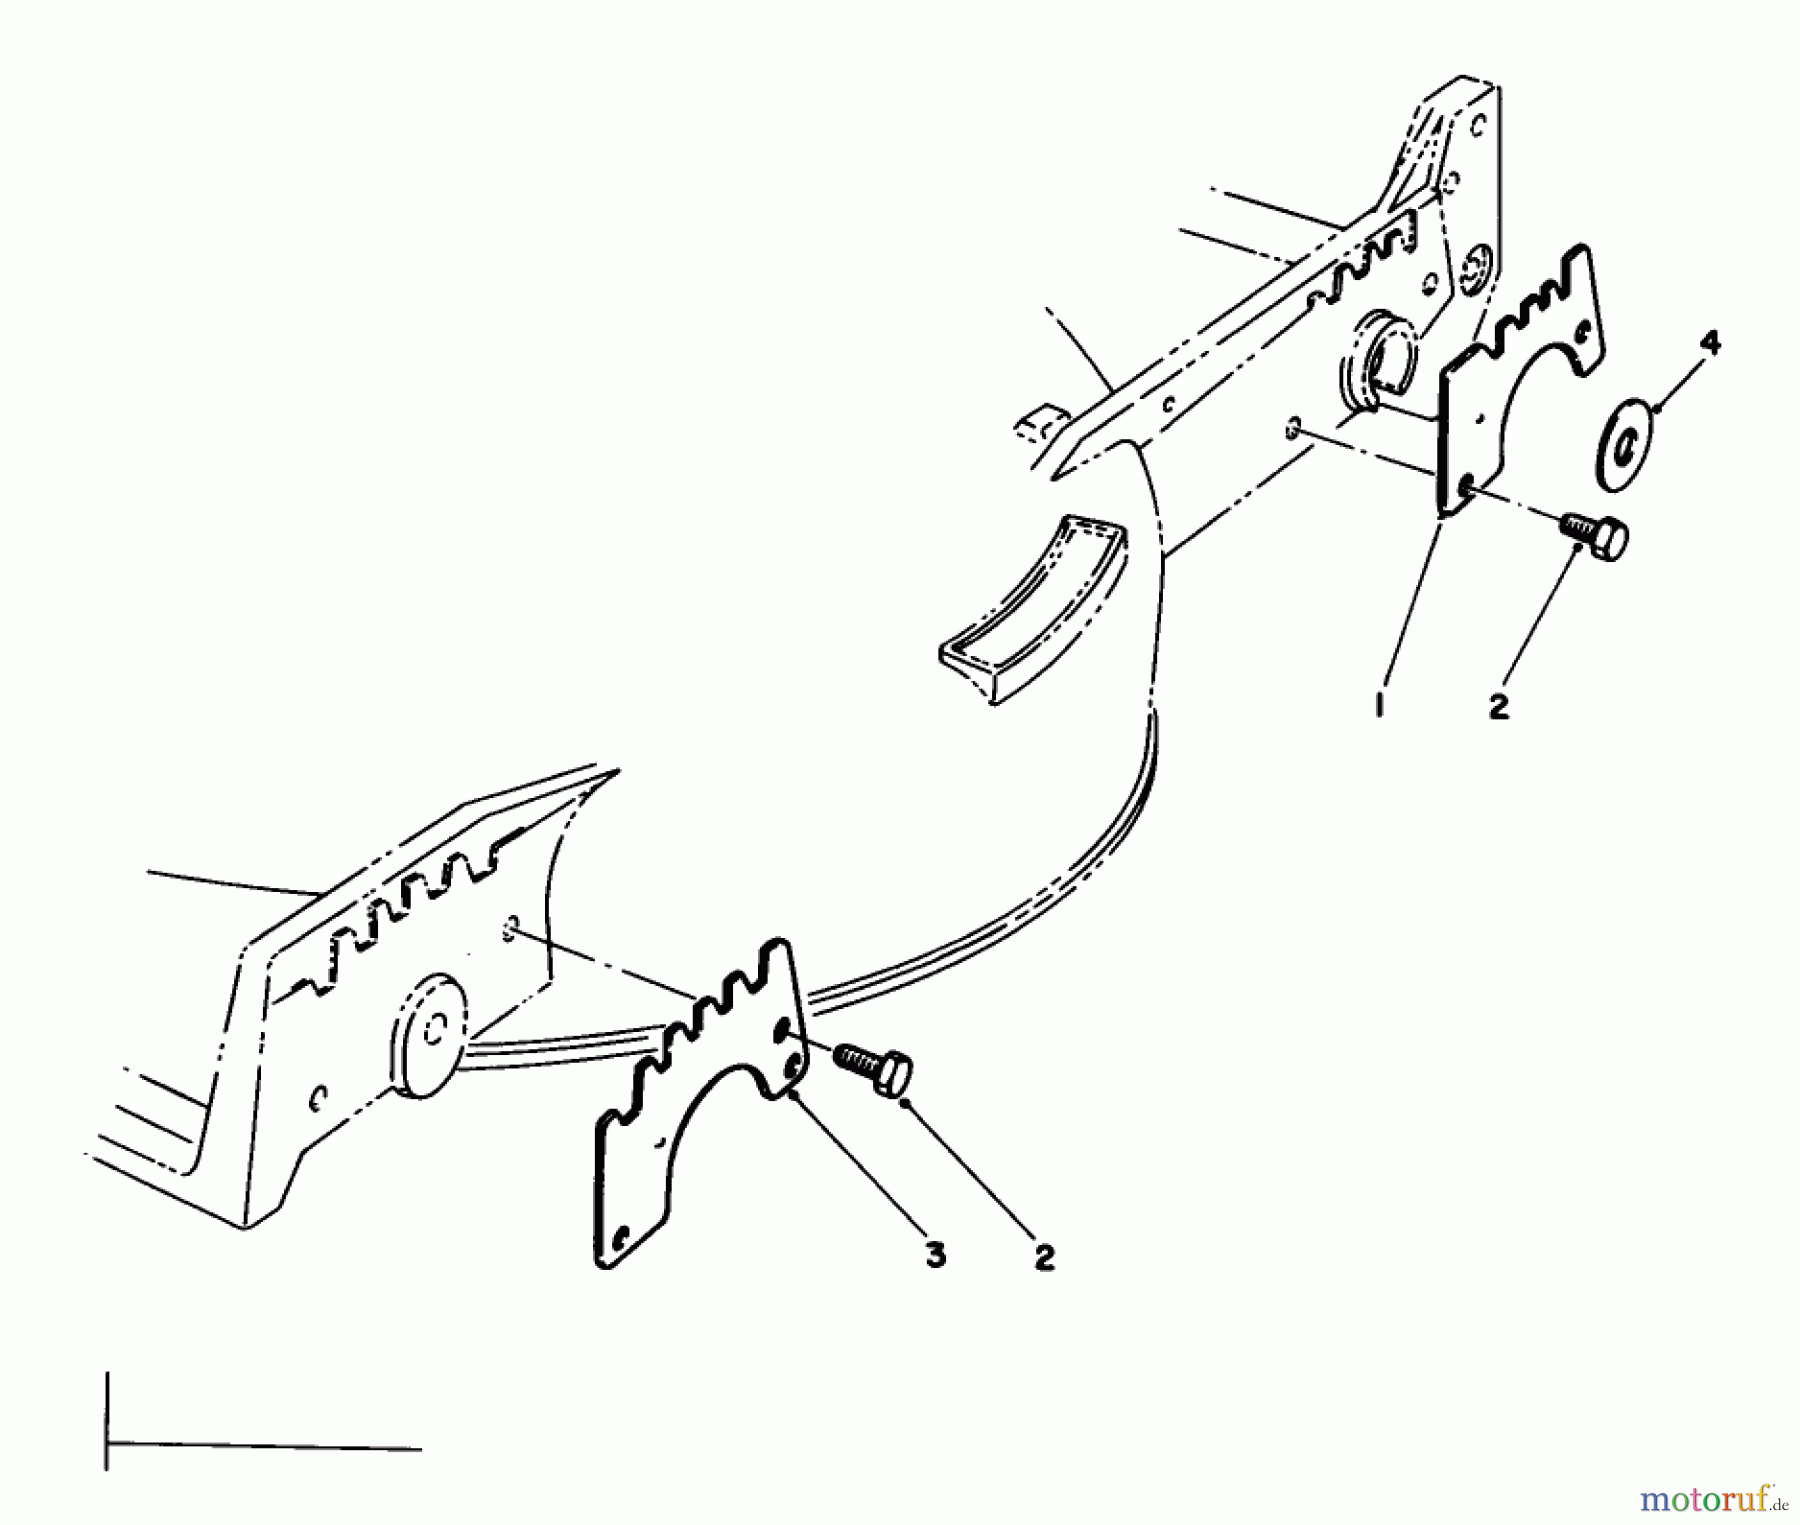  Toro Neu Mowers, Walk-Behind Seite 1 20215 - Toro Lawnmower, 1991 (1000001-1999999) WEAR PLATE MODEL NO. 49-4080 (OPTIONAL)